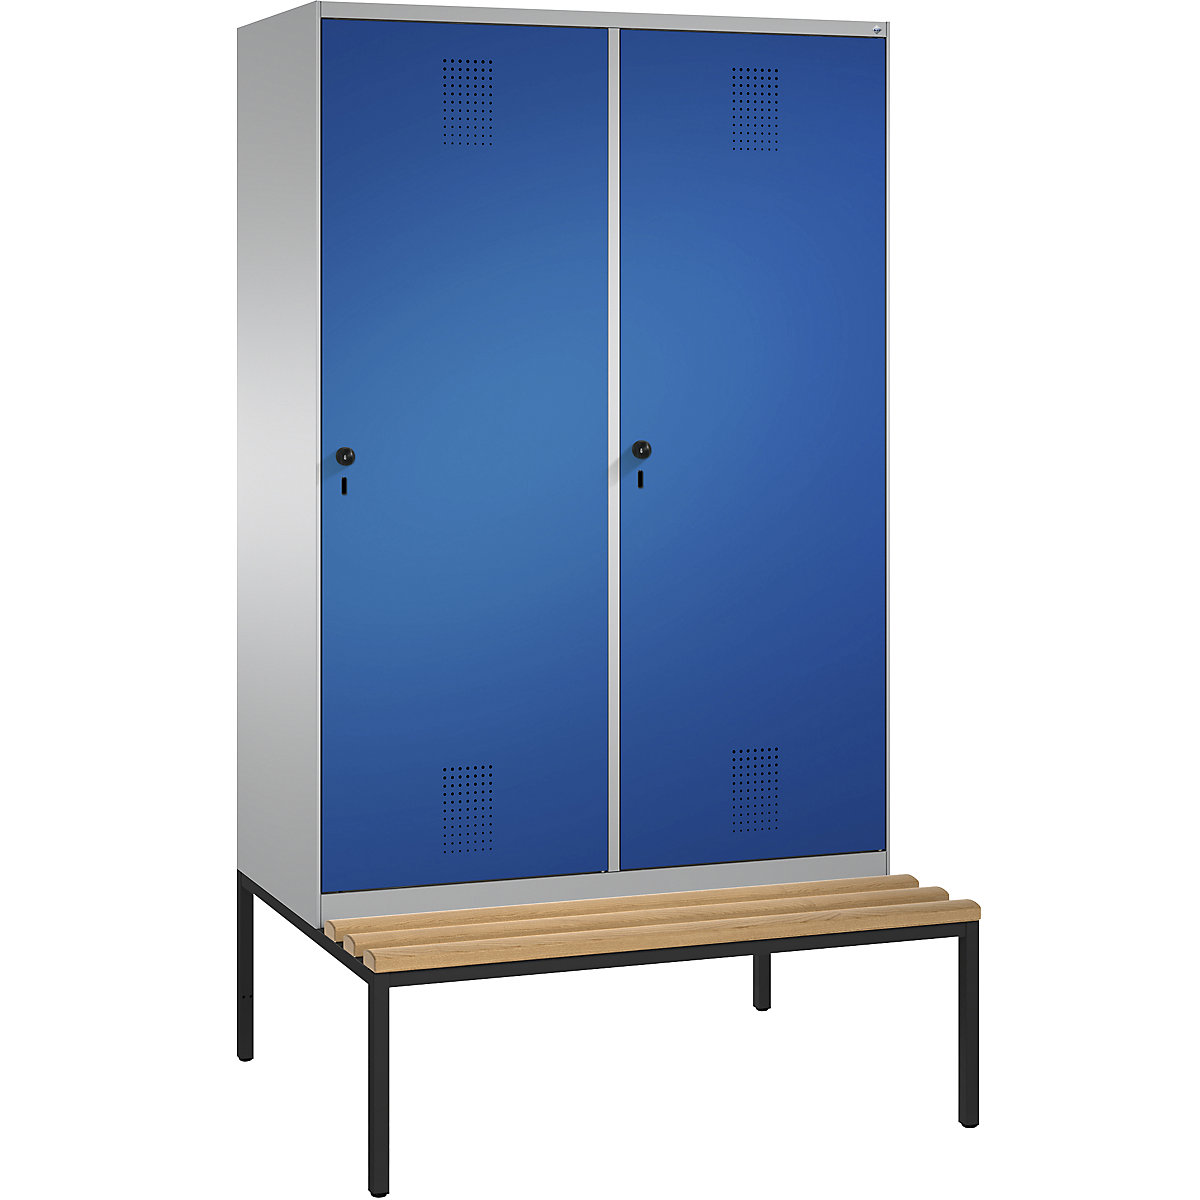 Šatní skříň s lavicí EVOLO s dveřmi přes 2 oddíly – C+P, 4 oddíly, 2 dveře, šířka oddílu 300 mm, bílý hliník / enciánová modrá-6